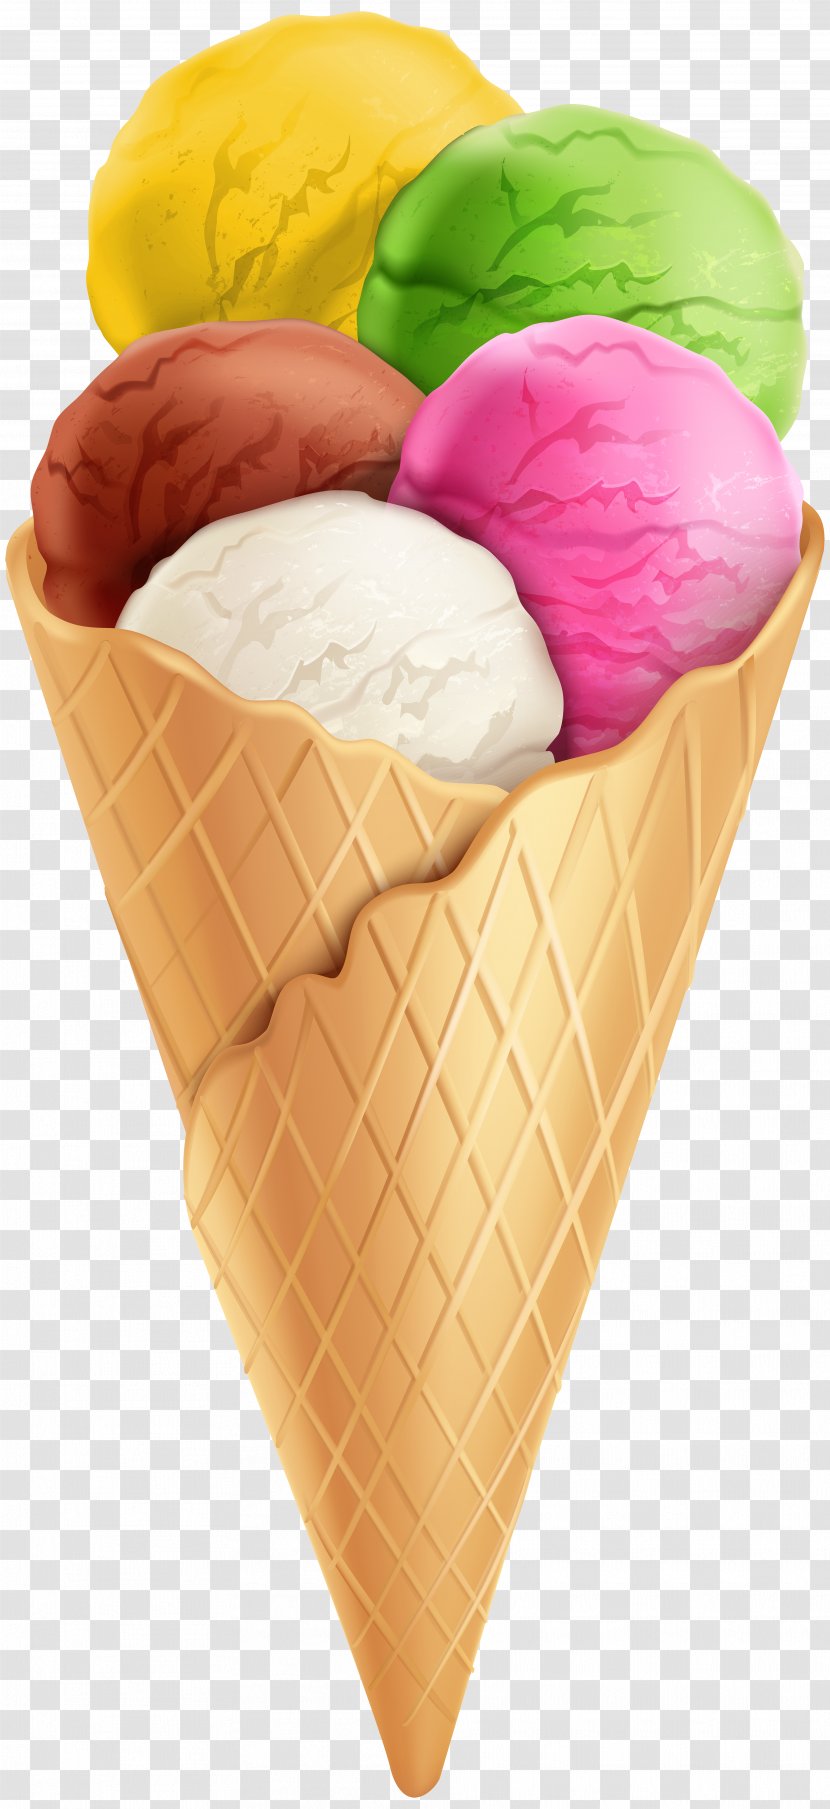 Ice Cream Cone Chocolate Neapolitan - Sundae - Transparent Clip Art Image Transparent PNG